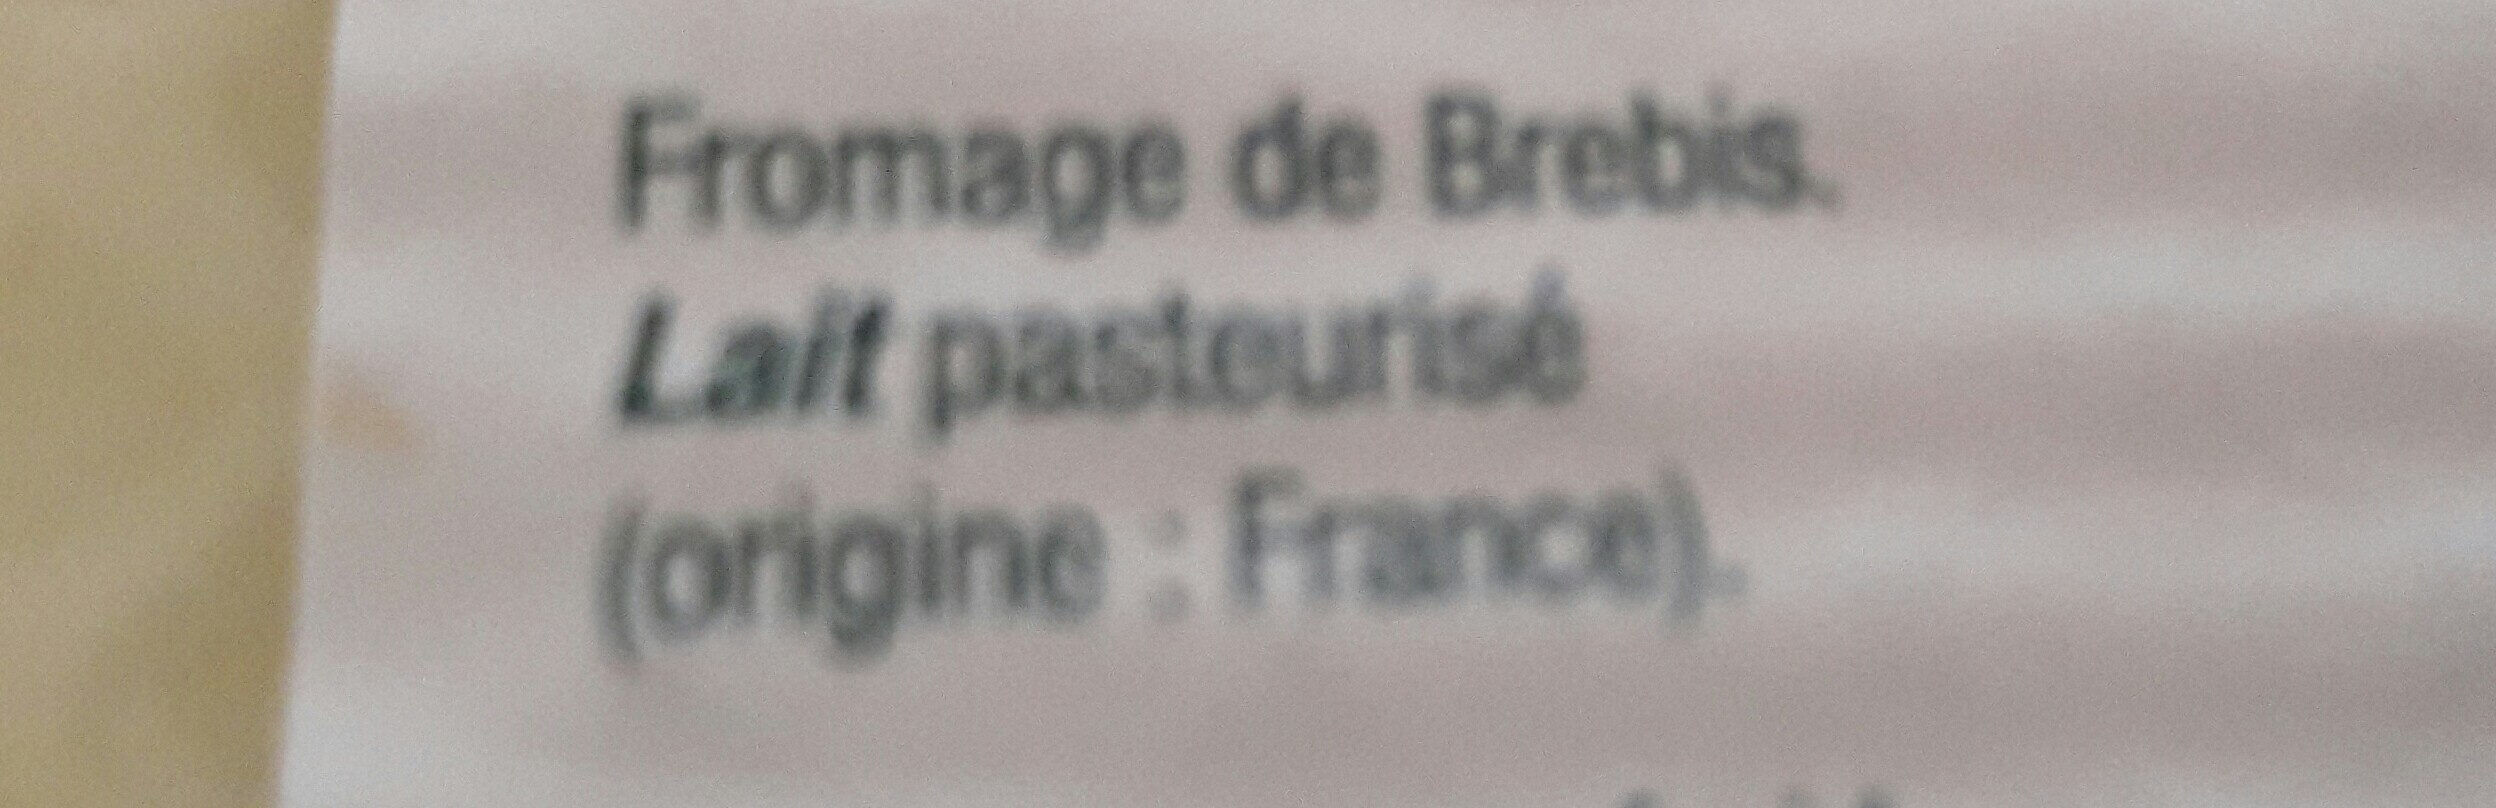 Tranches de brebis - Ingredients - fr